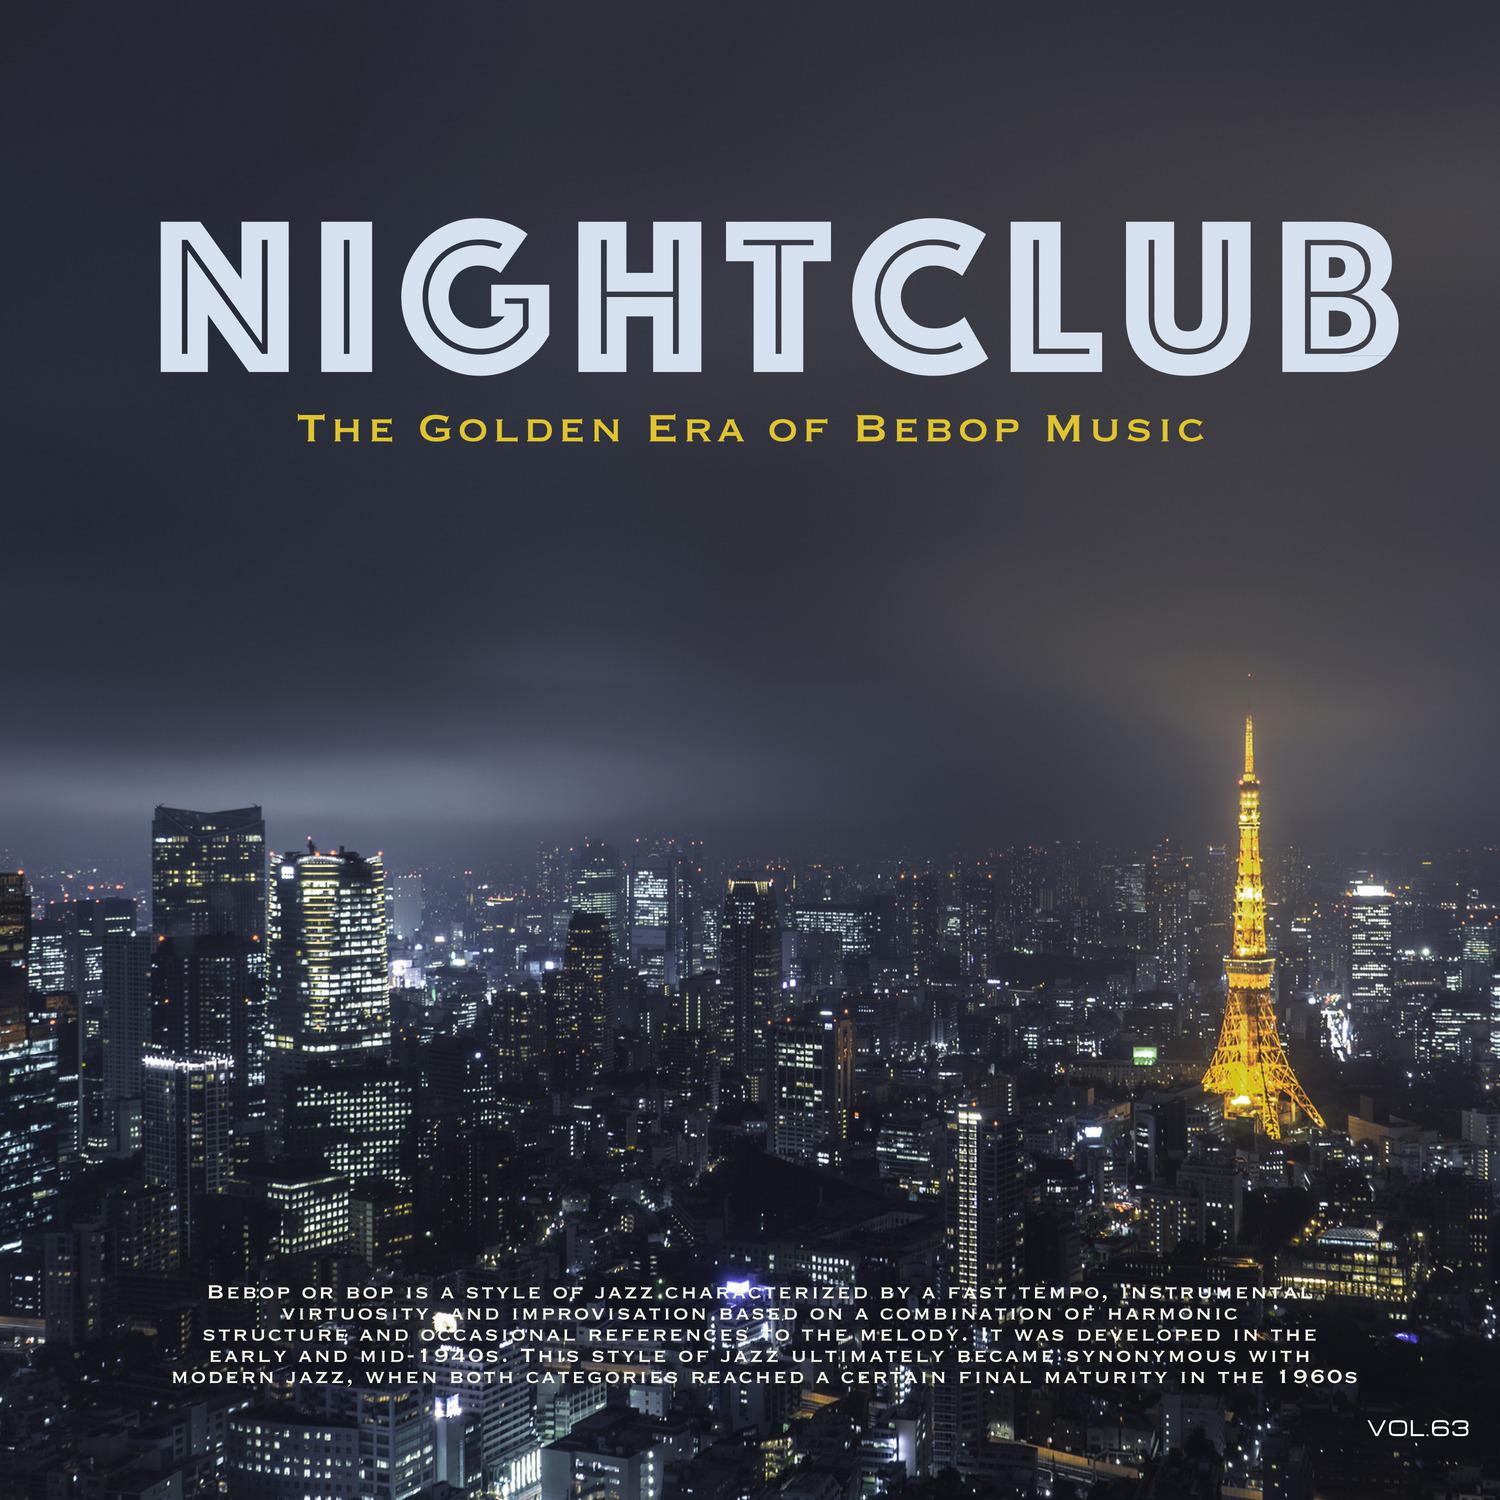 Nightclub, Vol. 63 (The Golden Era of Bebop Music)